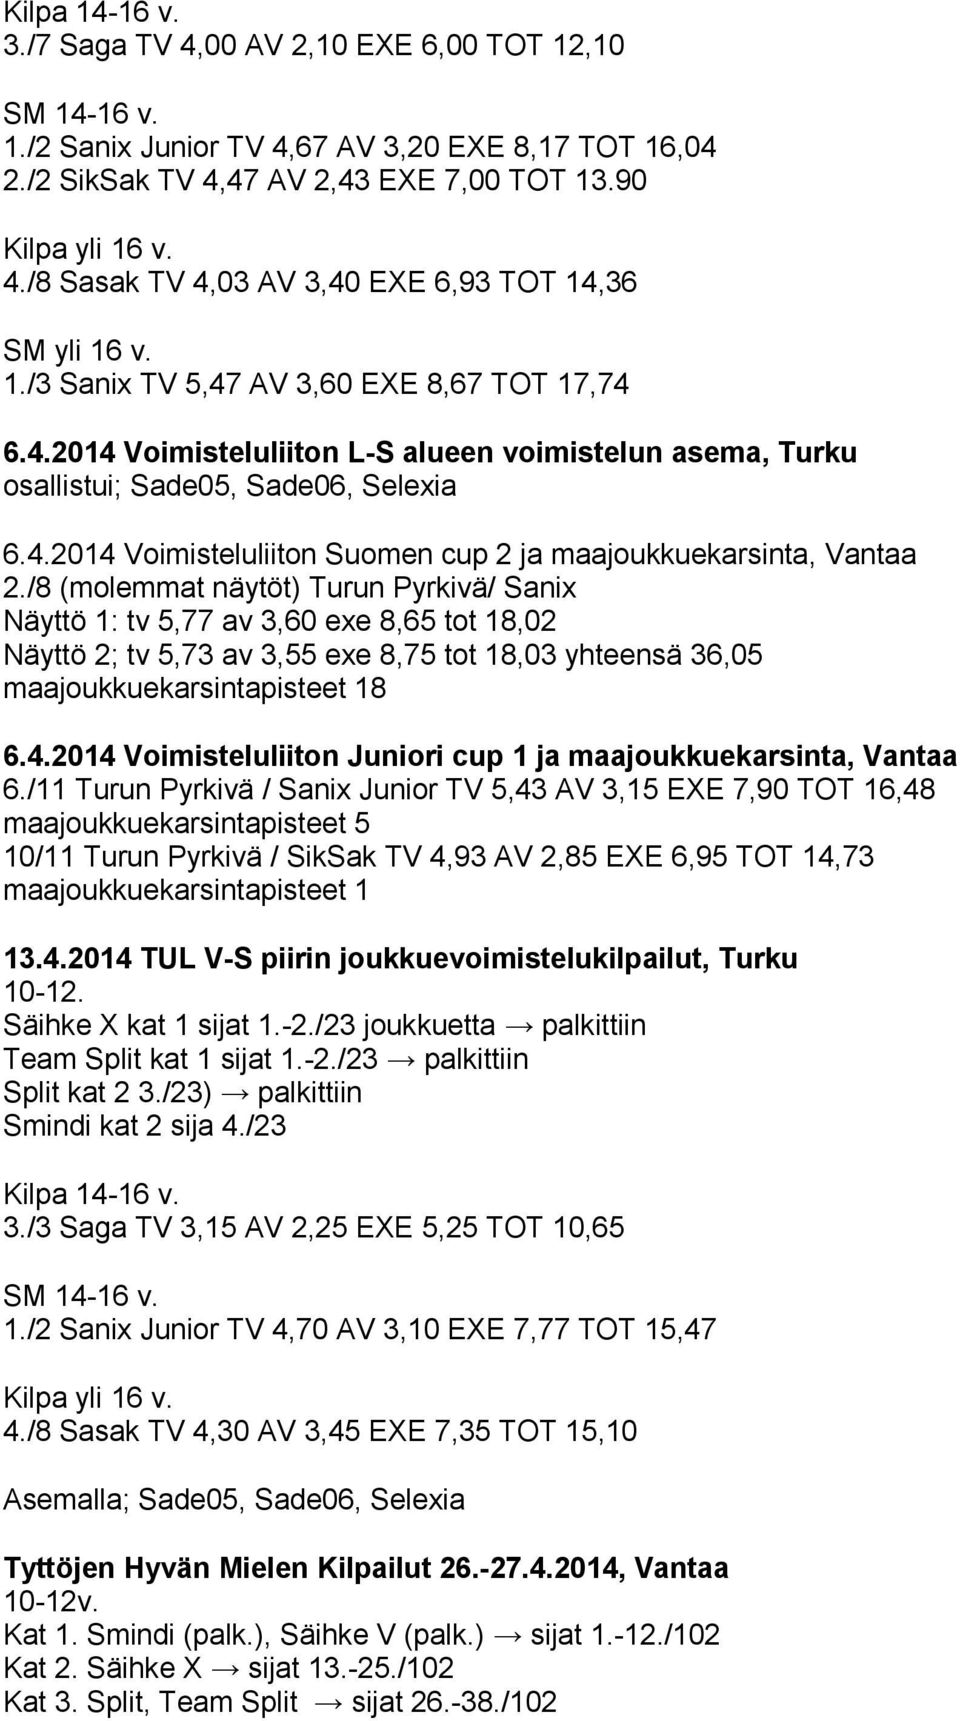 /8 (molemmat näytöt) Turun Pyrkivä/ Sanix Näyttö 1: tv 5,77 av 3,60 exe 8,65 tot 18,02 Näyttö 2; tv 5,73 av 3,55 exe 8,75 tot 18,03 yhteensä 36,05 maajoukkuekarsintapisteet 18 6.4.